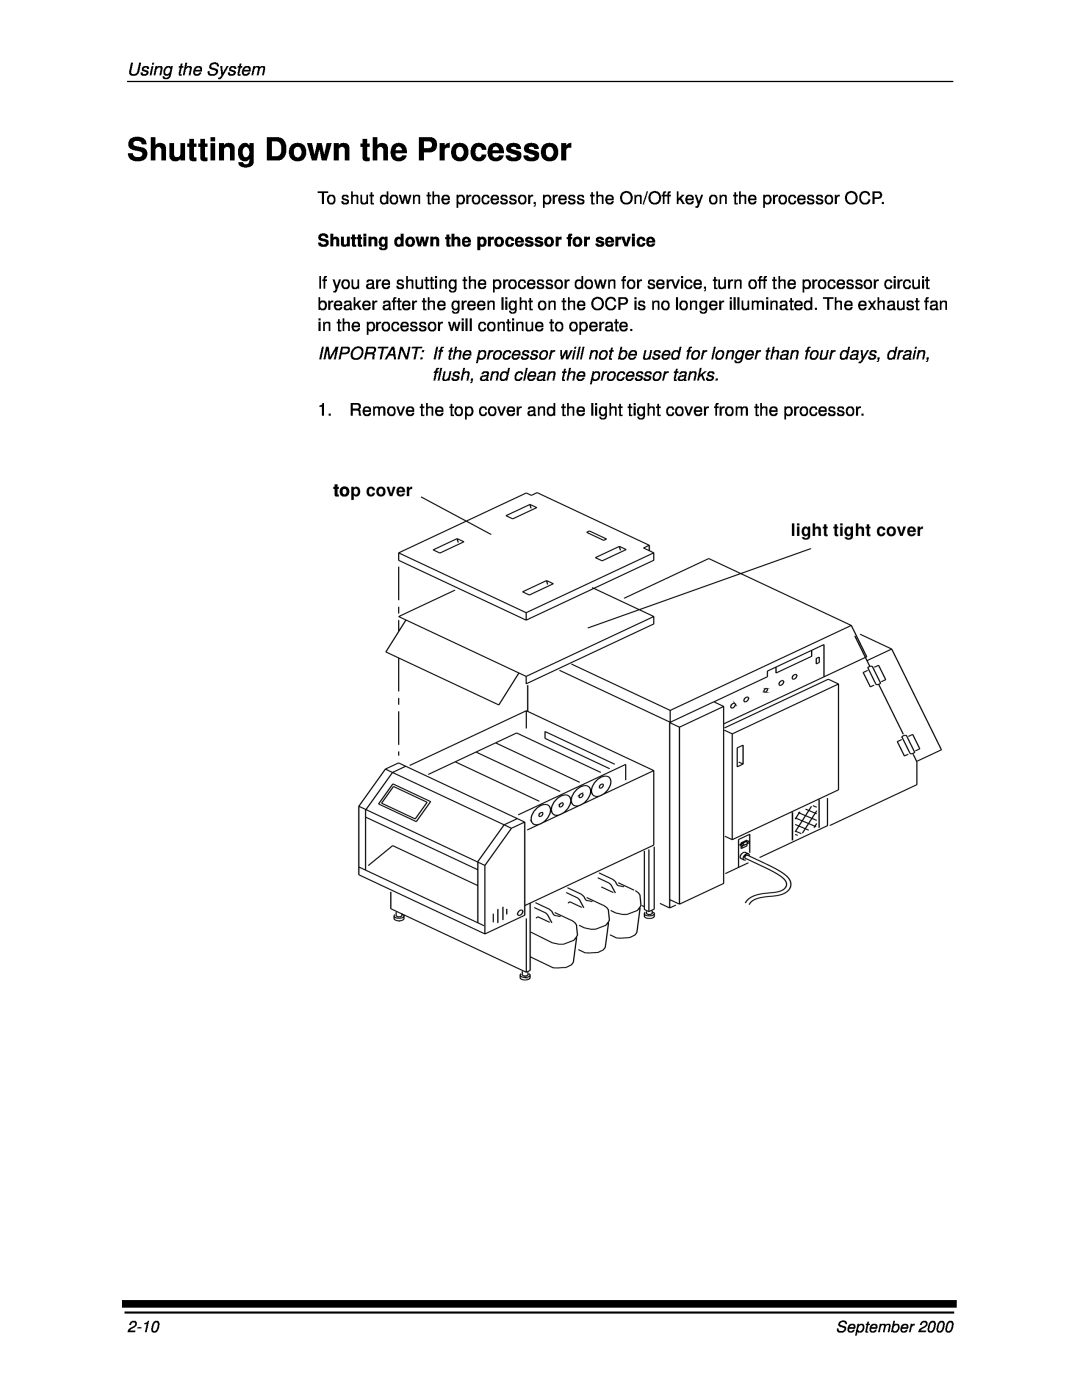 Kodak 20P manual Shutting Down the Processor, Using the System, Shutting down the processor for service 